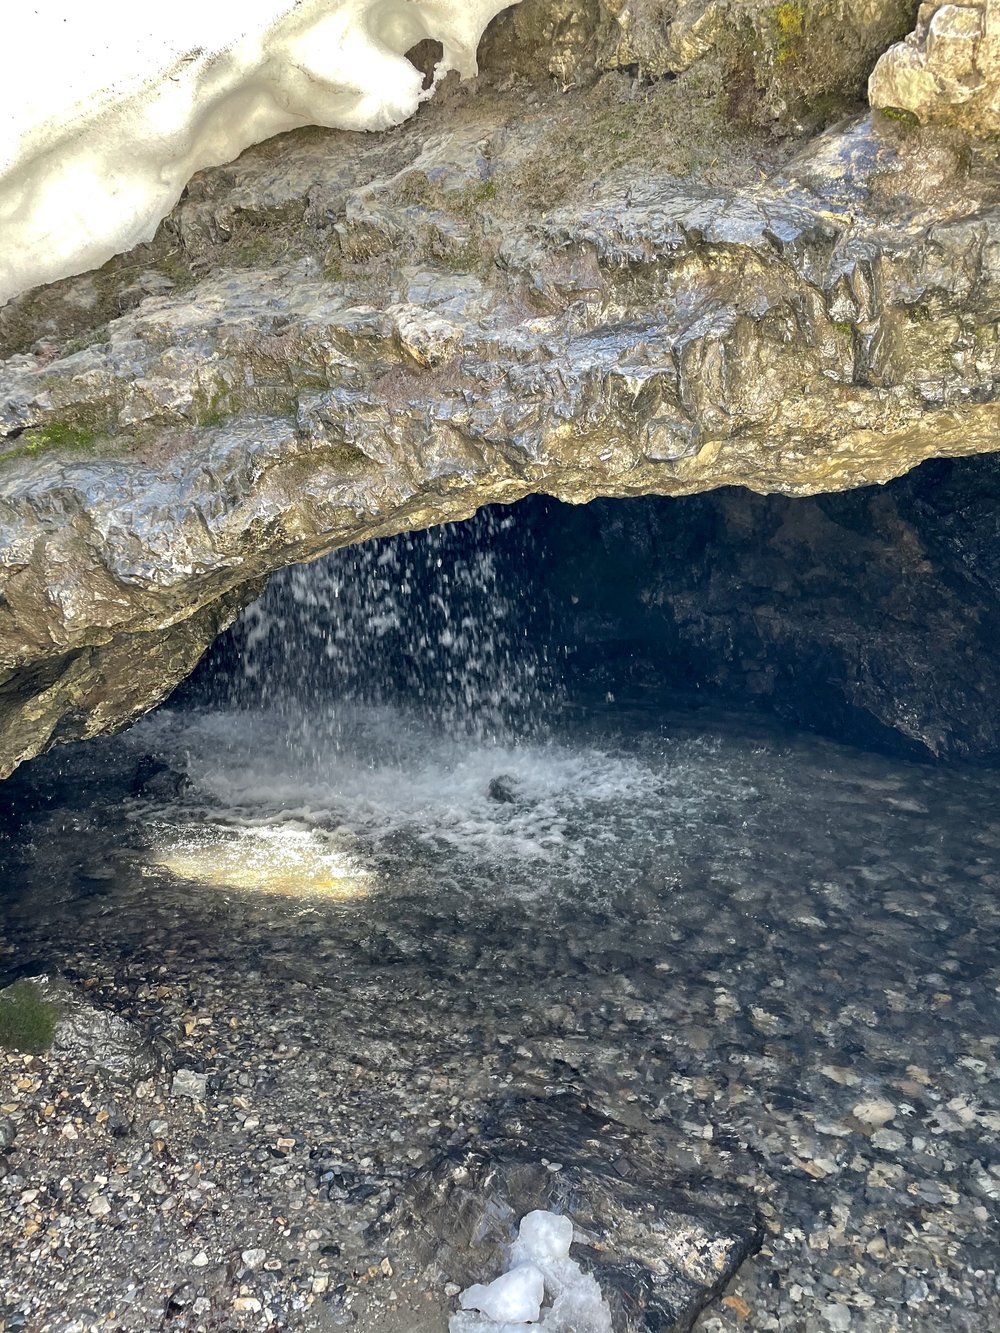 Donut Falls Cave